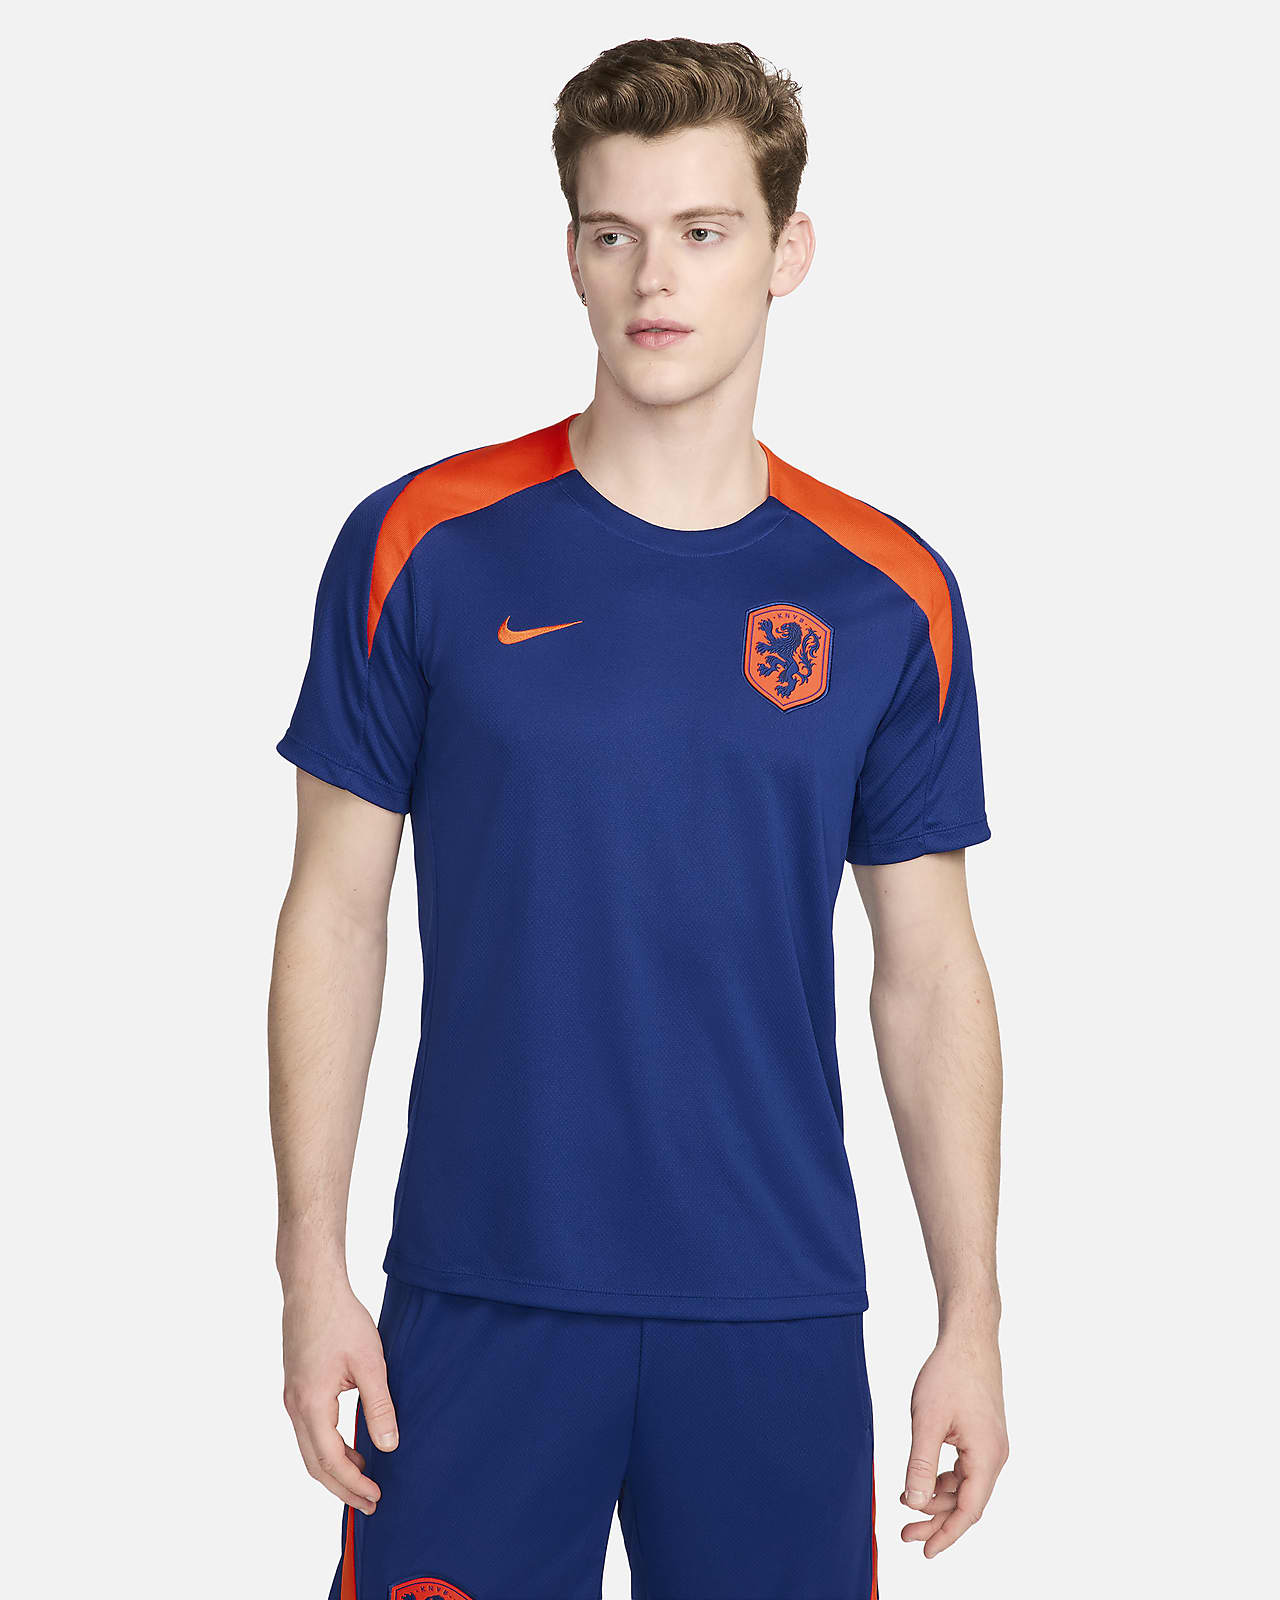 Ανδρική ποδοσφαιρική κοντομάνικη πλεκτή μπλούζα Κάτω Χώρες Nike Dri-FIT Strike